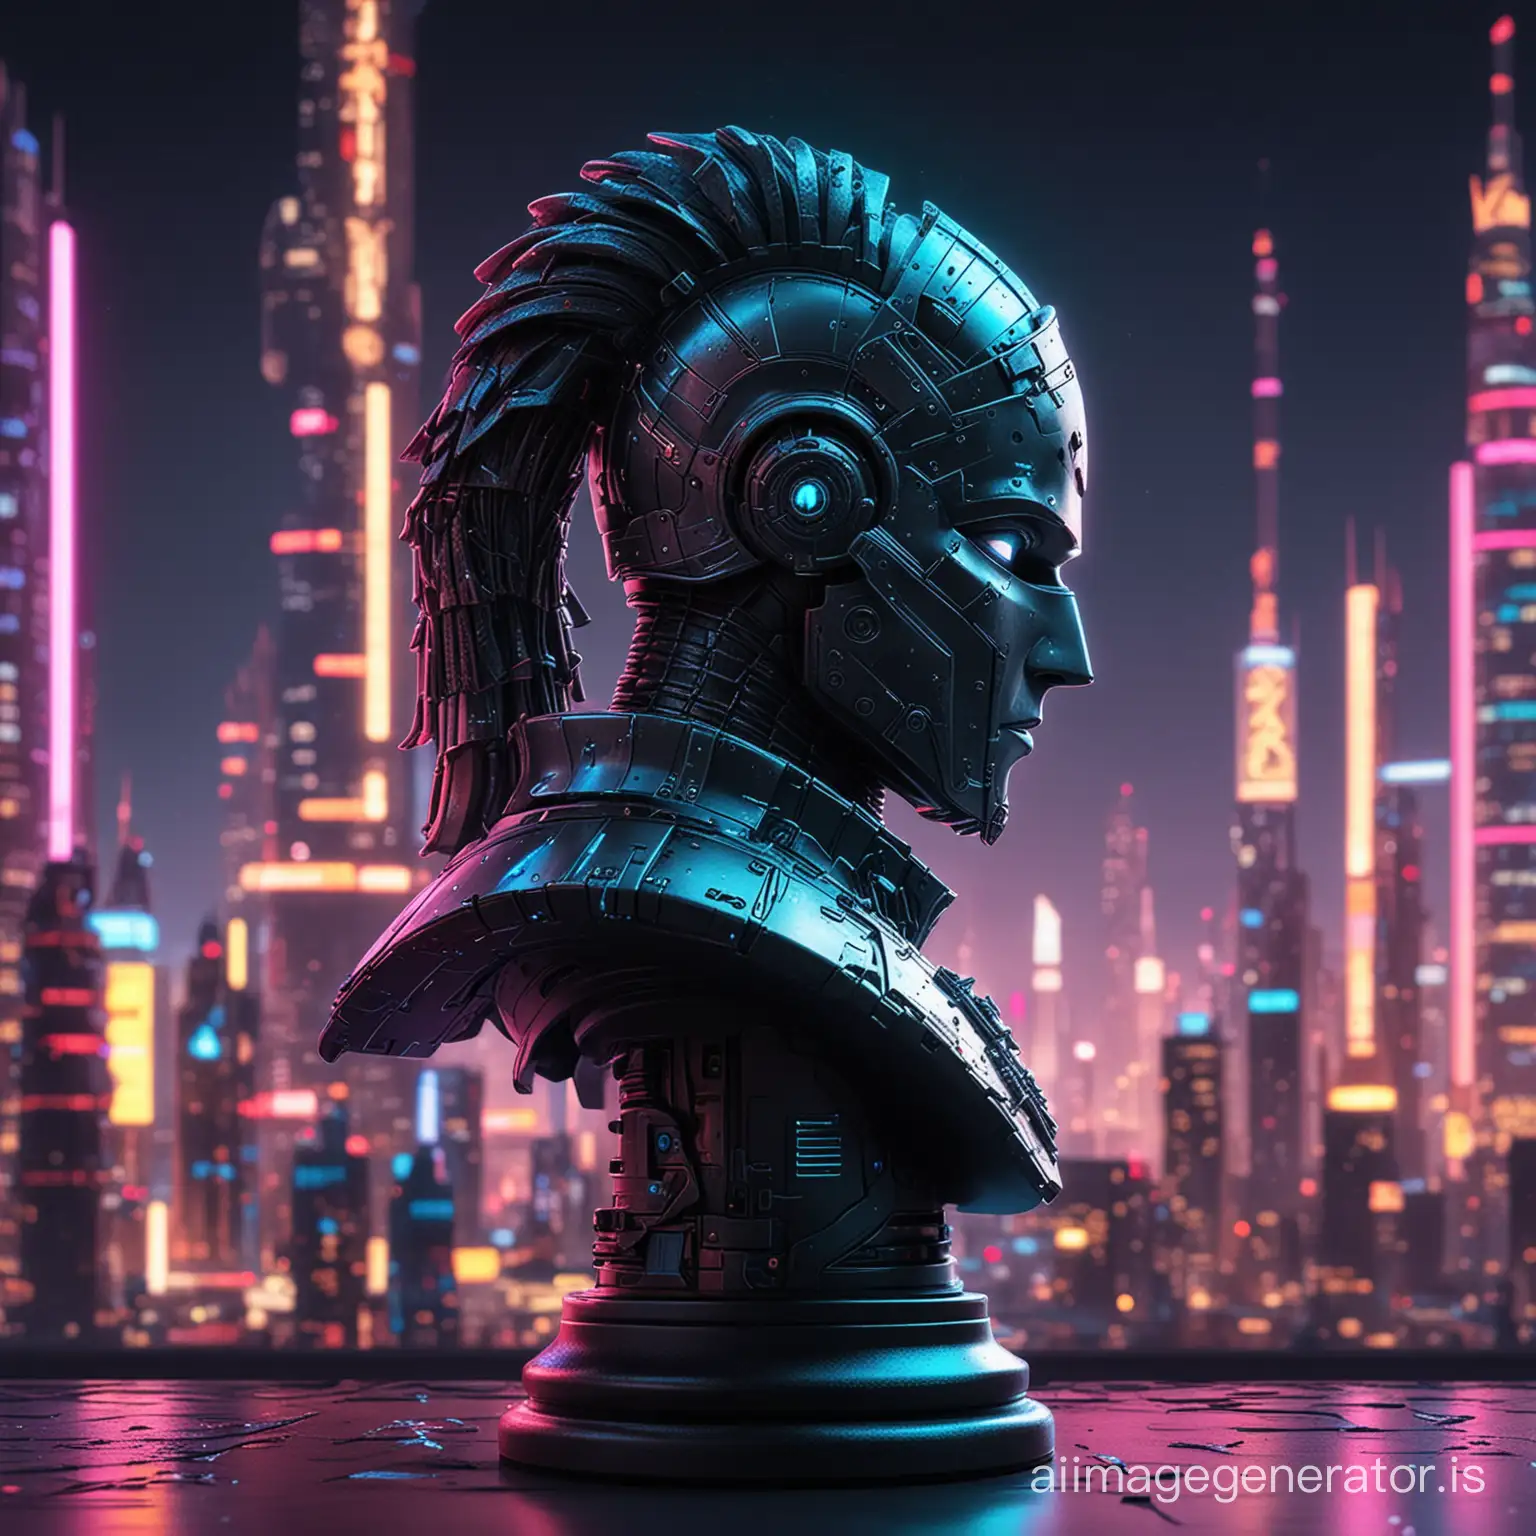 Futuristic-Cyberpunk-Knight-Chess-Piece-Against-Neon-Cityscape